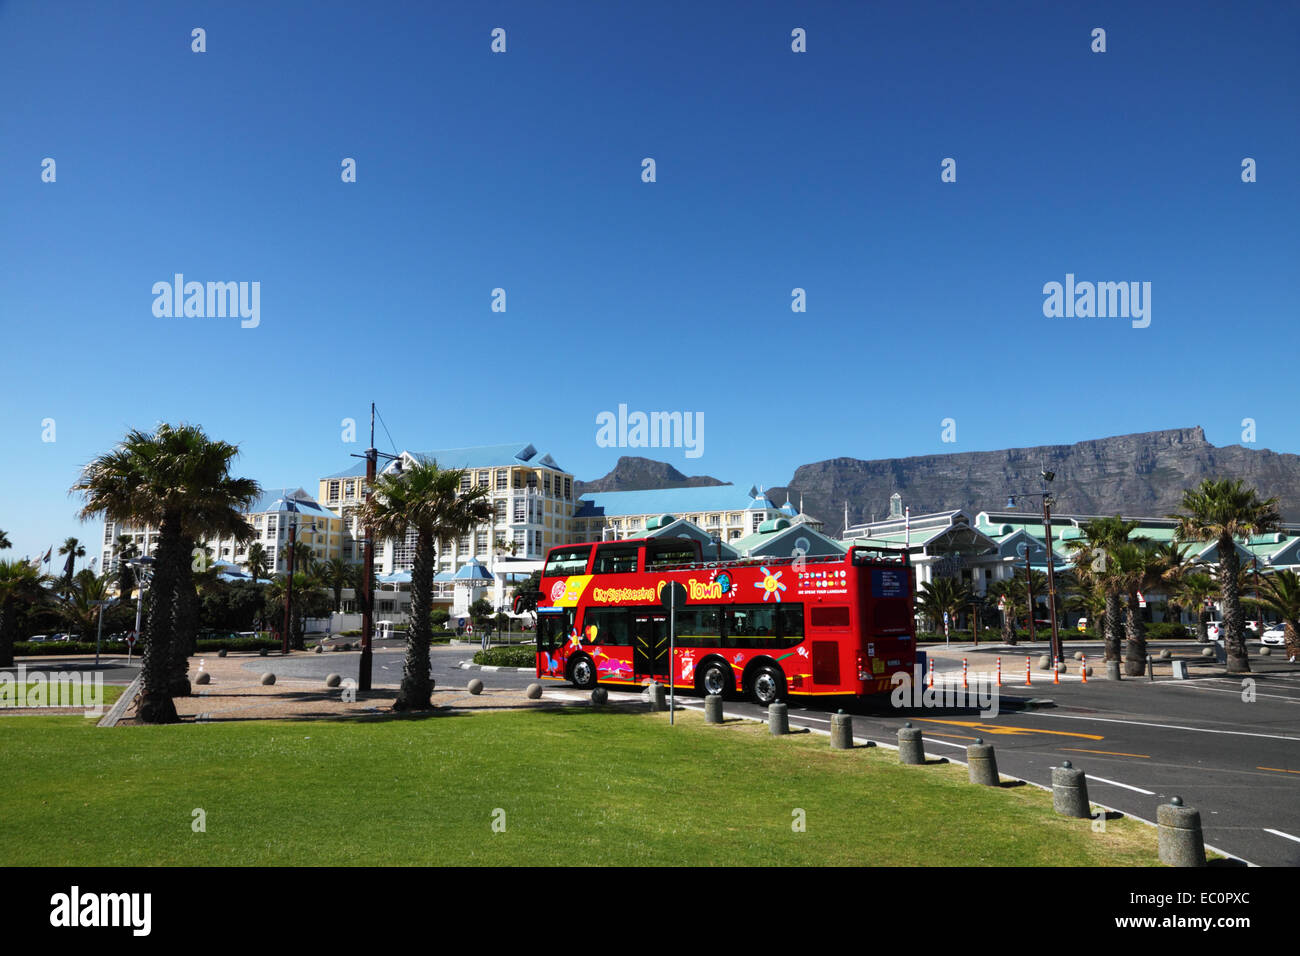 "Bus-Tour vorbei an Table Bay Hotel, Victoria und Alfred Waterfront mit Tafelberg im Hintergrund, Cape Town, South Afric Stockfoto